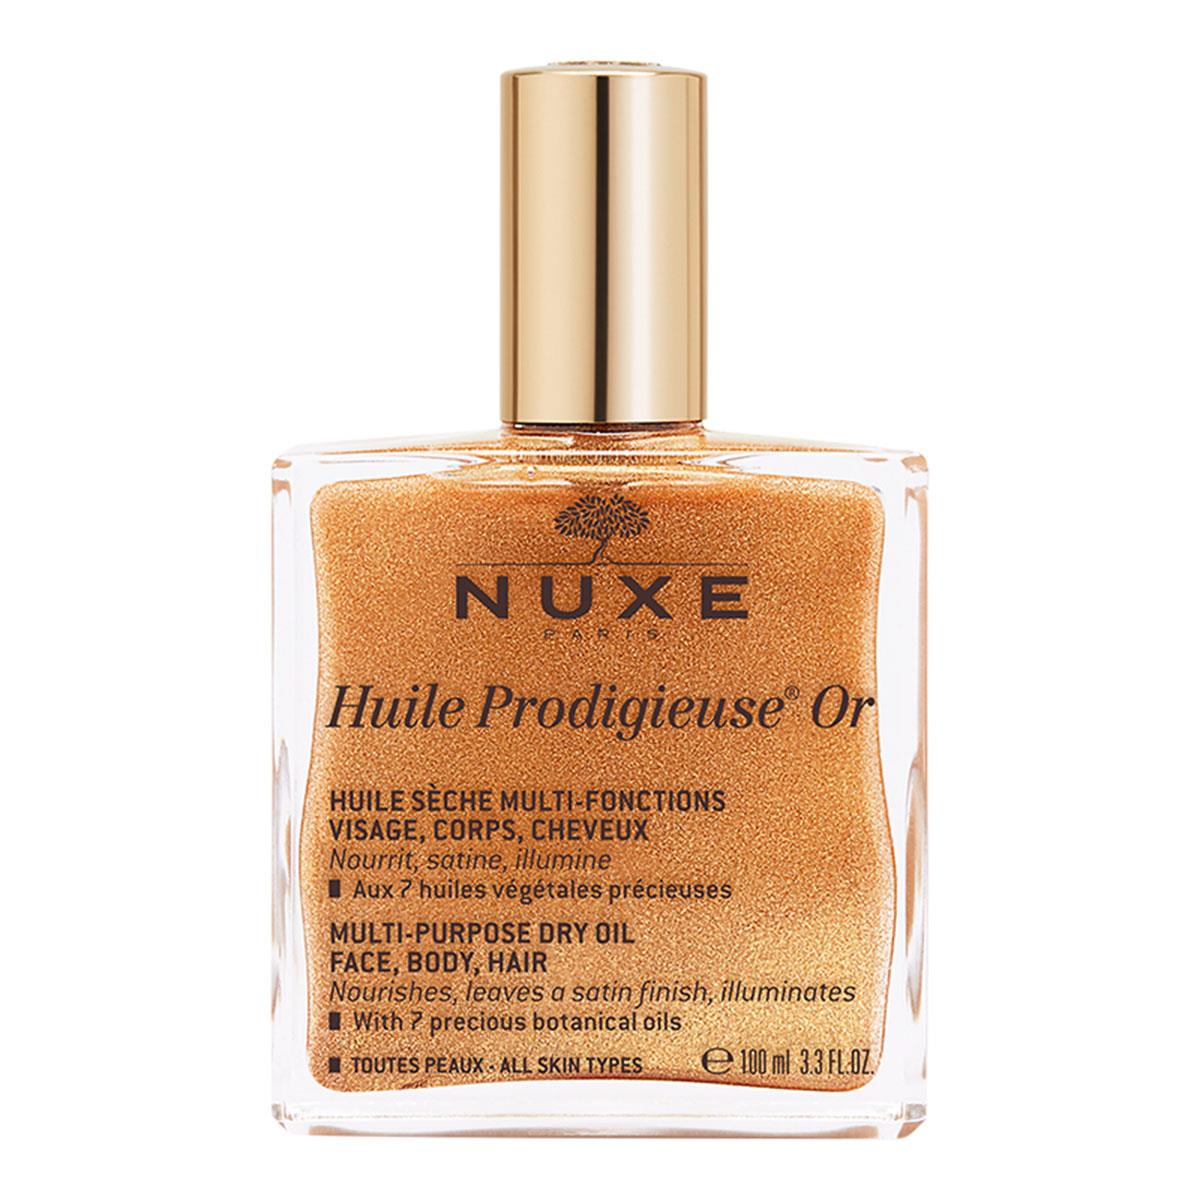 Nuxe Huile Prodigieuse Or Altın Parıltılı Çok Amaçlı Kuru Yağ (Yüz, Vücut,  Saç) 100 ml - Daffne